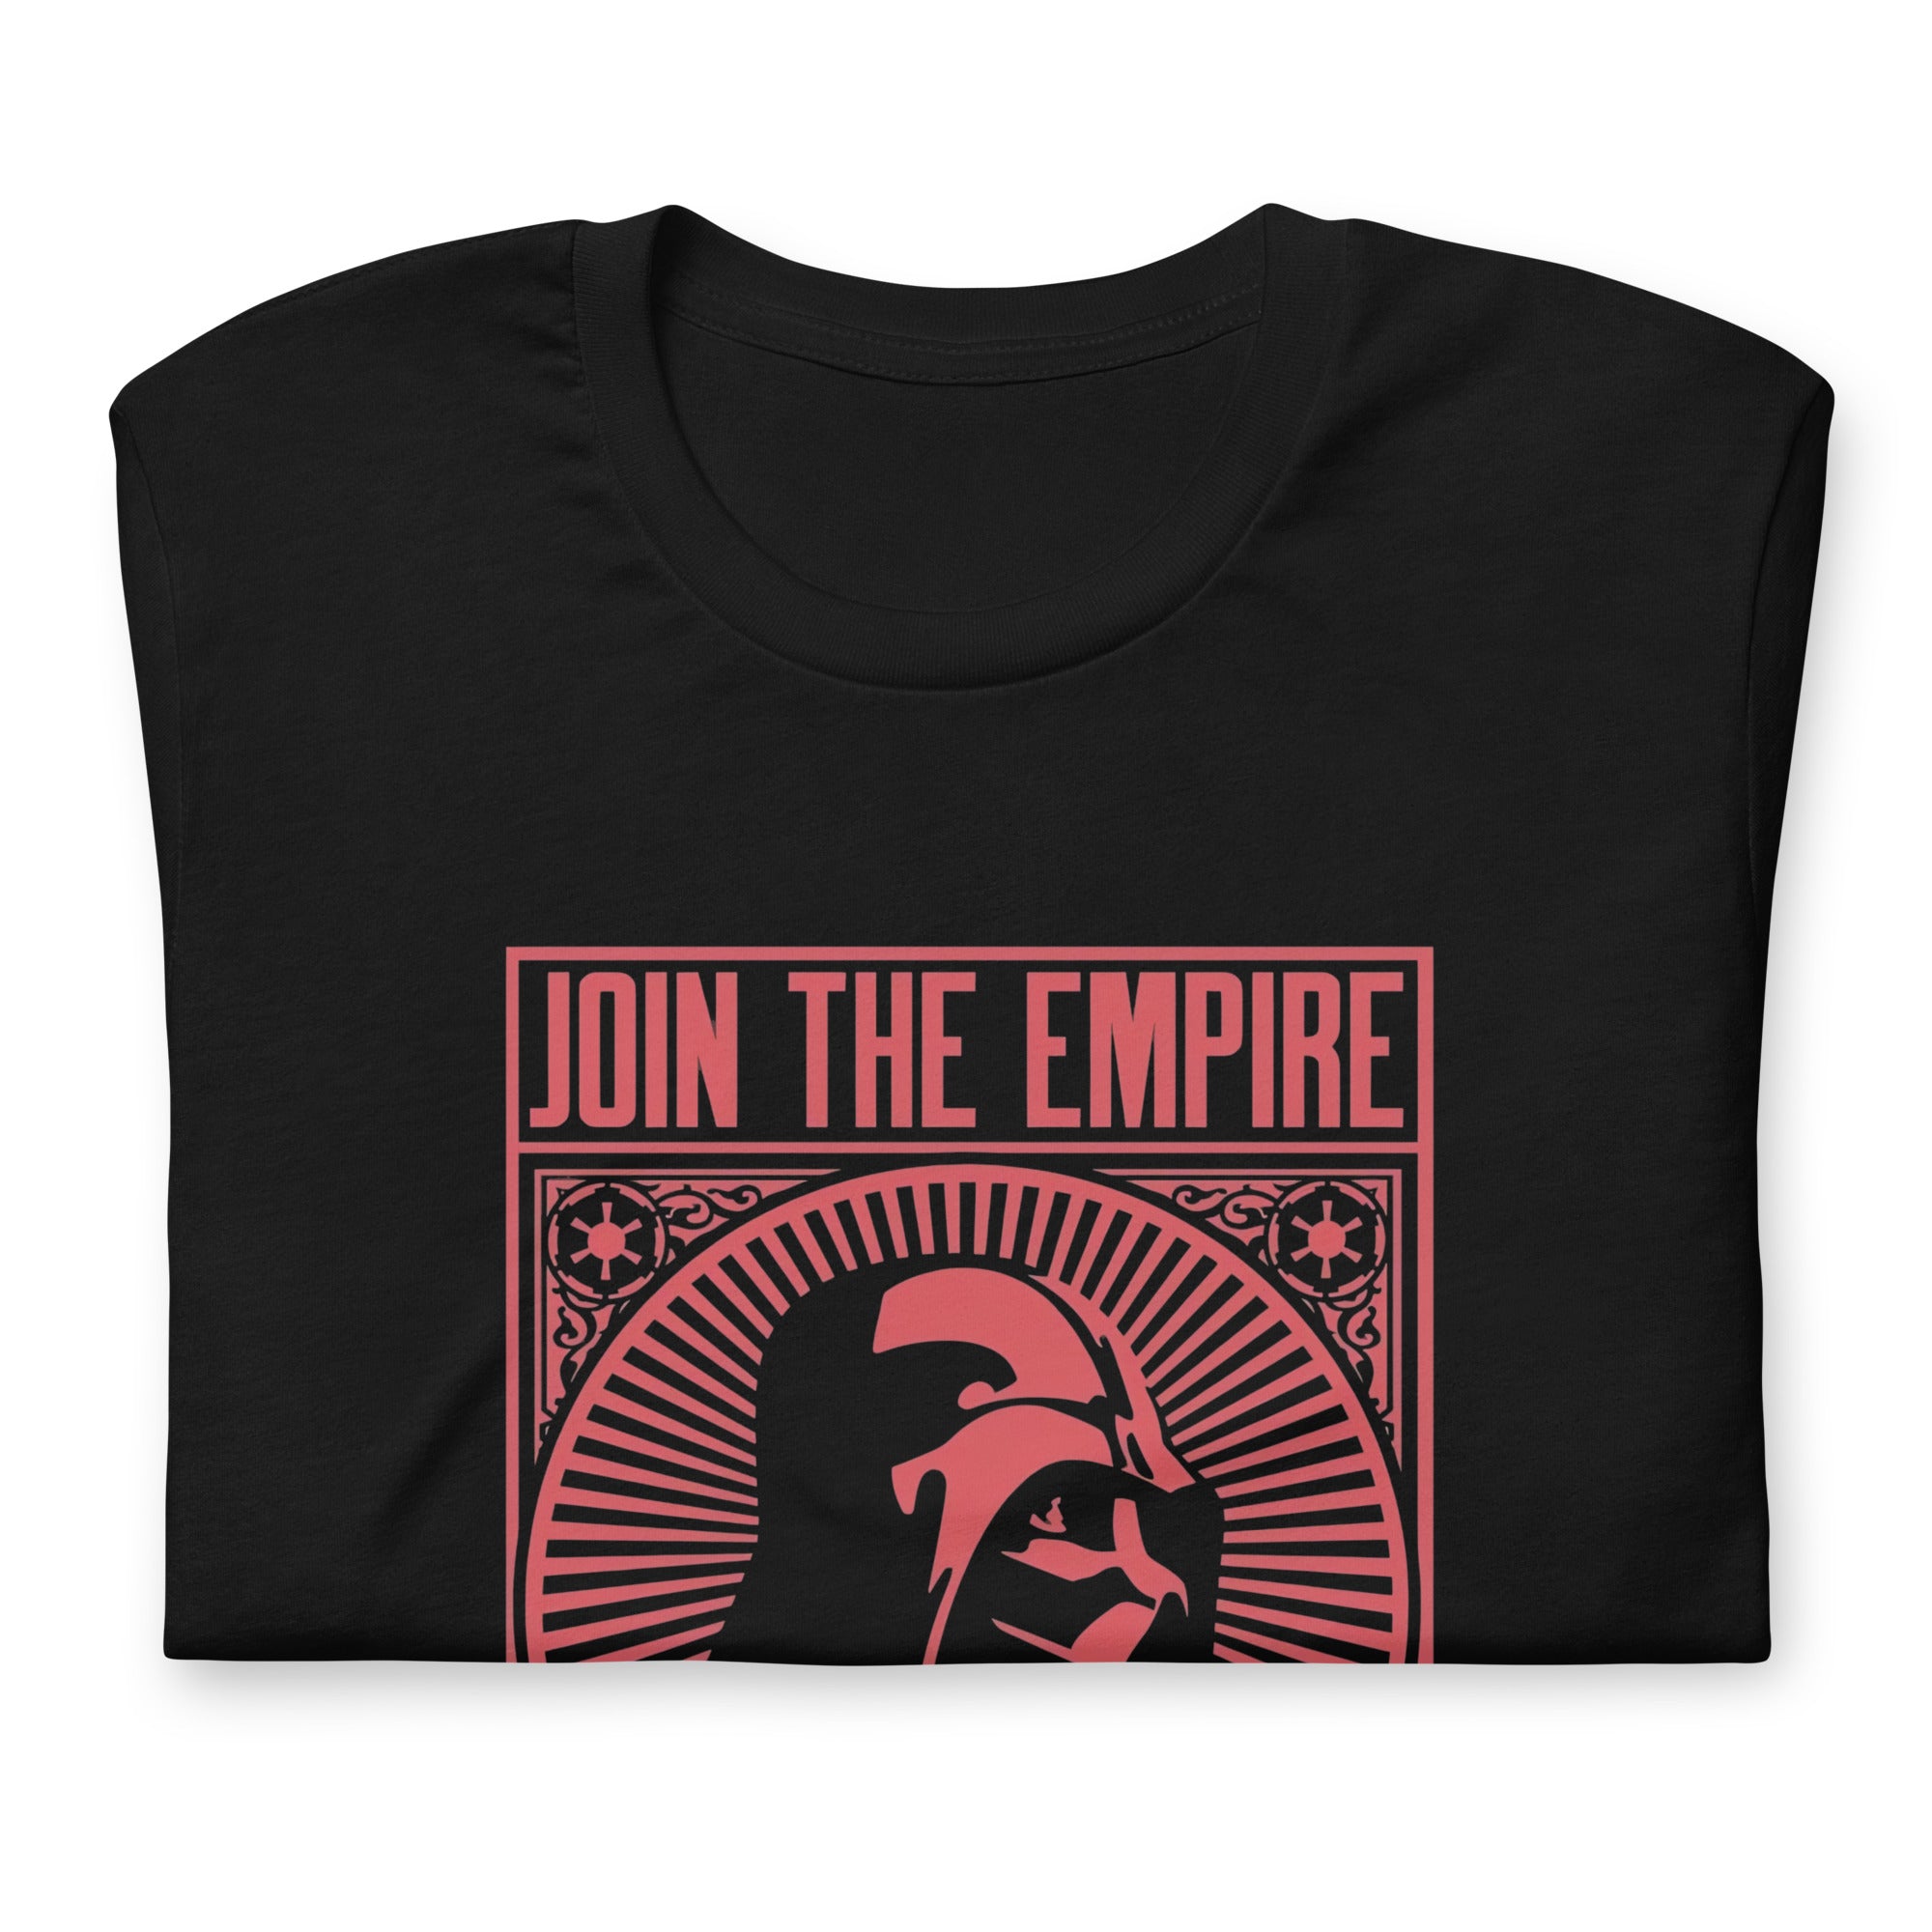 ¡Compra el mejor merchandising en Superstar! Encuentra diseños únicos y de alta calidad, Playera Join the empire